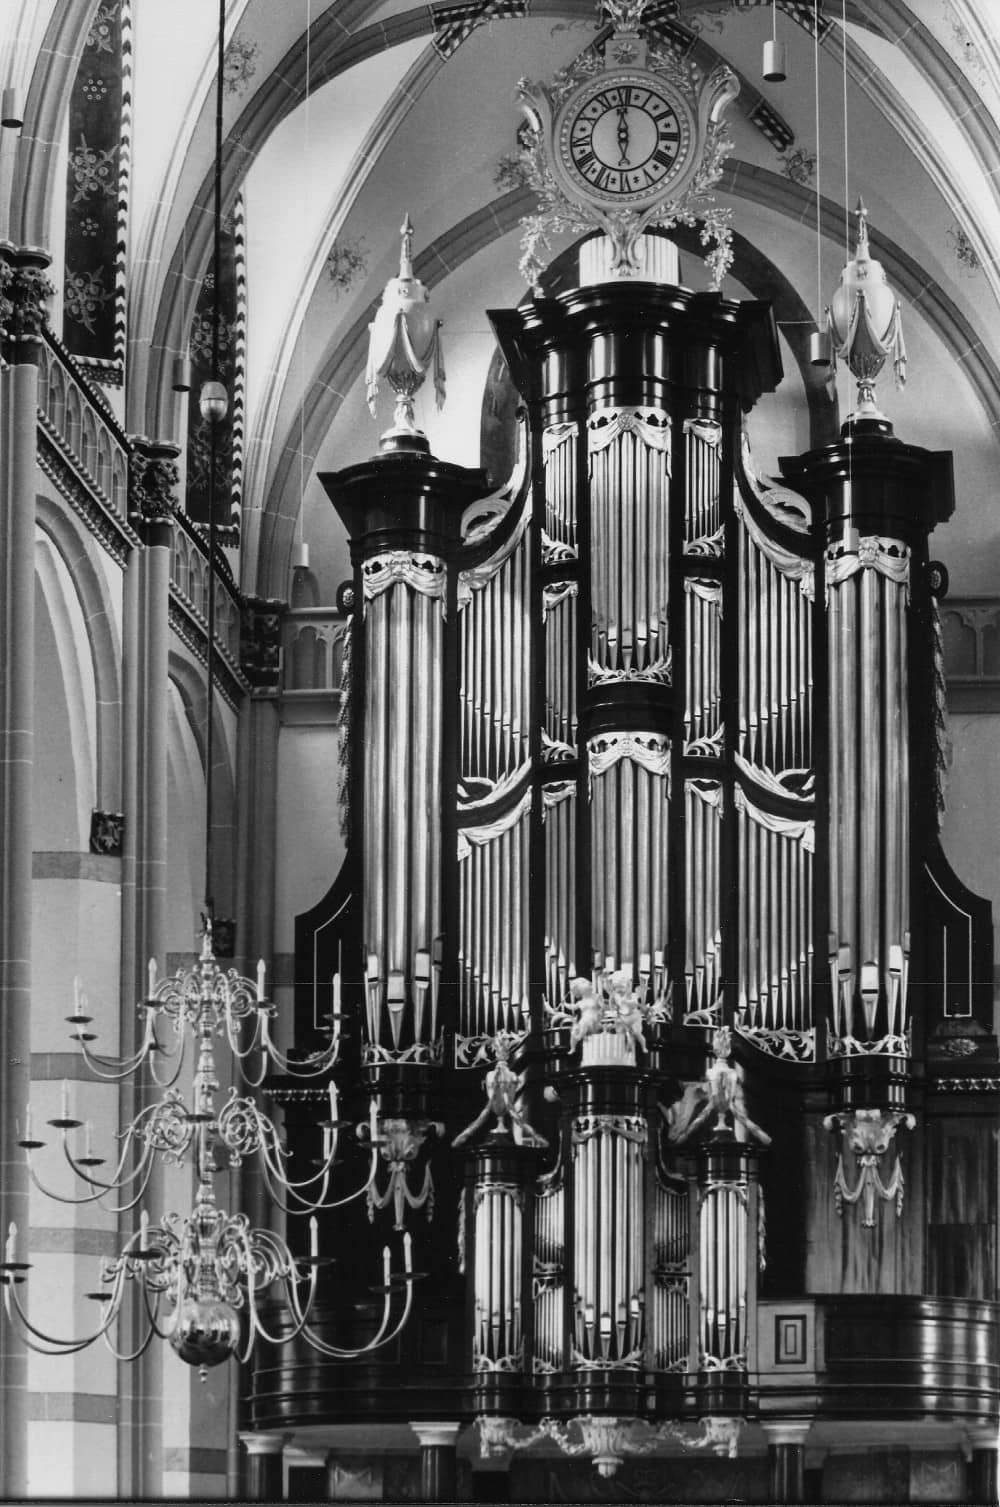 Buffet de l’orgue de Zaltbommel. Noir & blanc, vue d’ensemble.